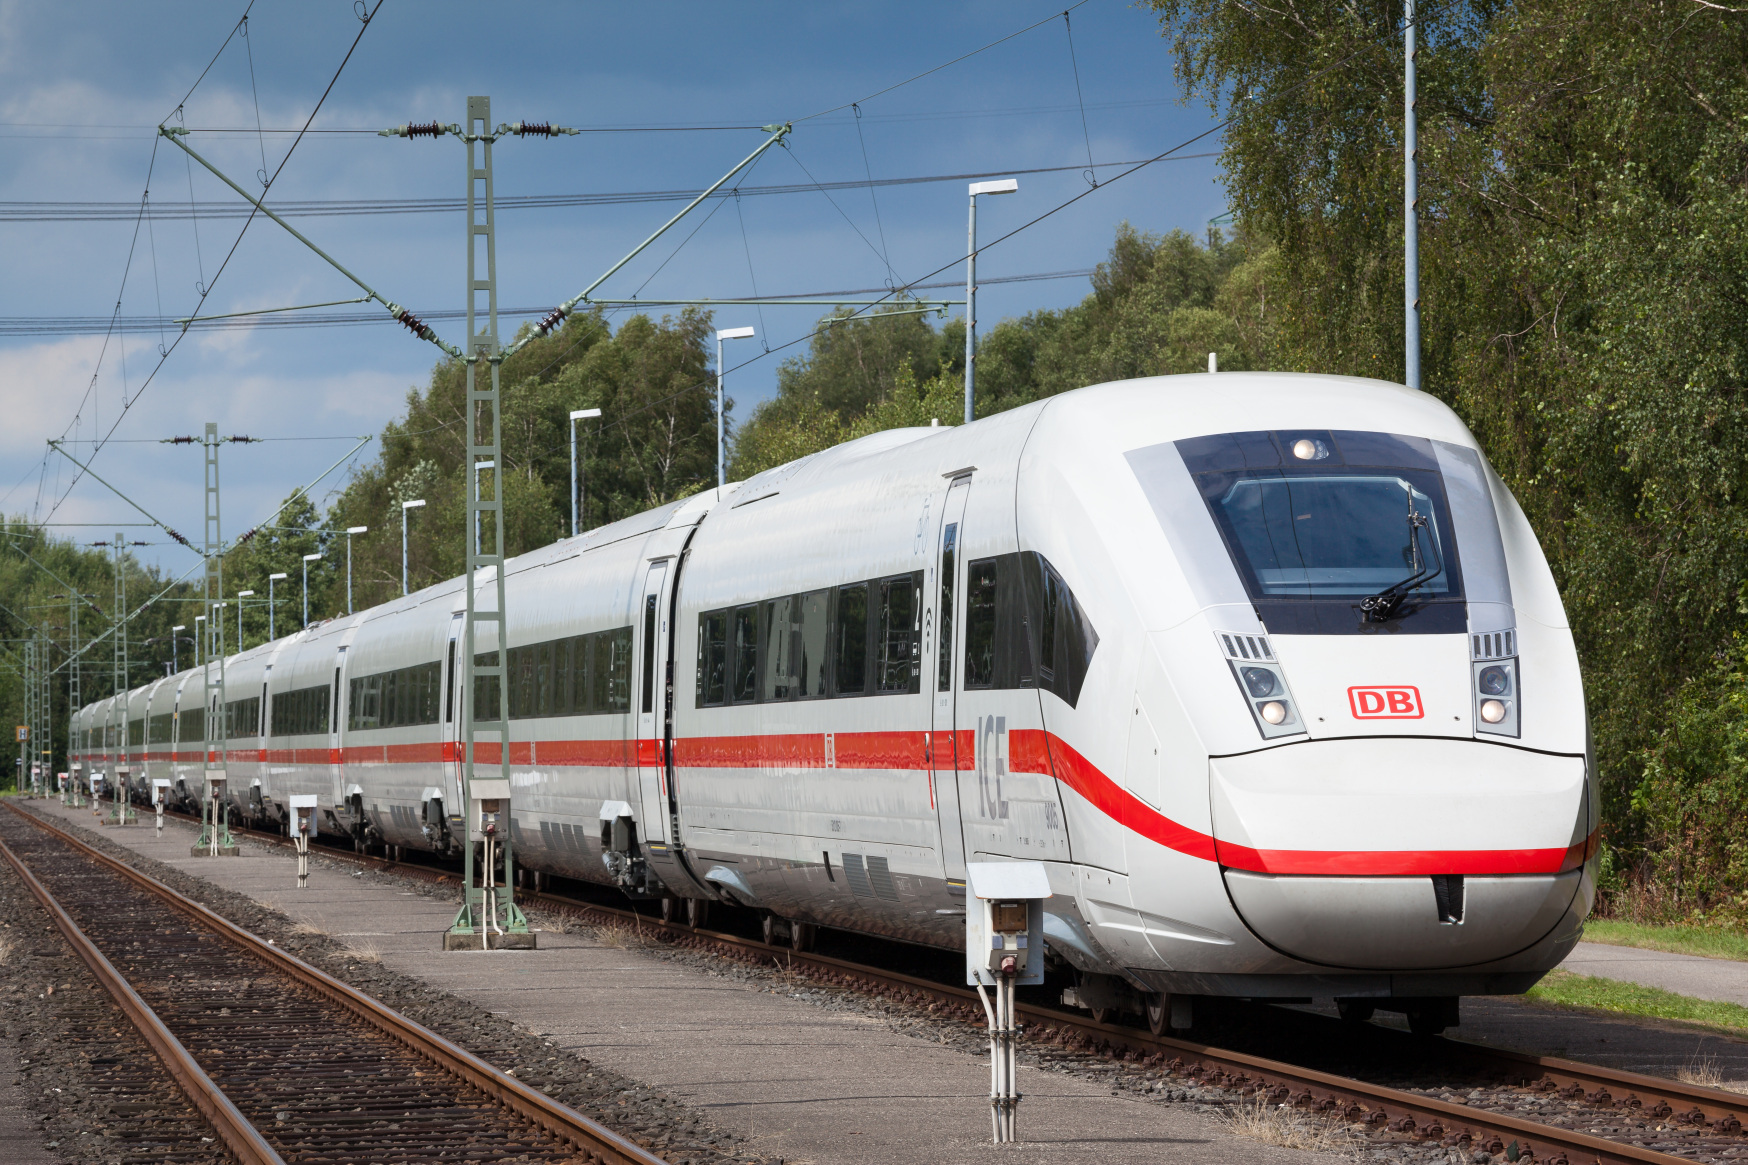 Обсуждение поезда. Поезд Deutsche Bahn. Ic (Intercity) поезда Германии. DB Ice 4. Ice 4 Train.